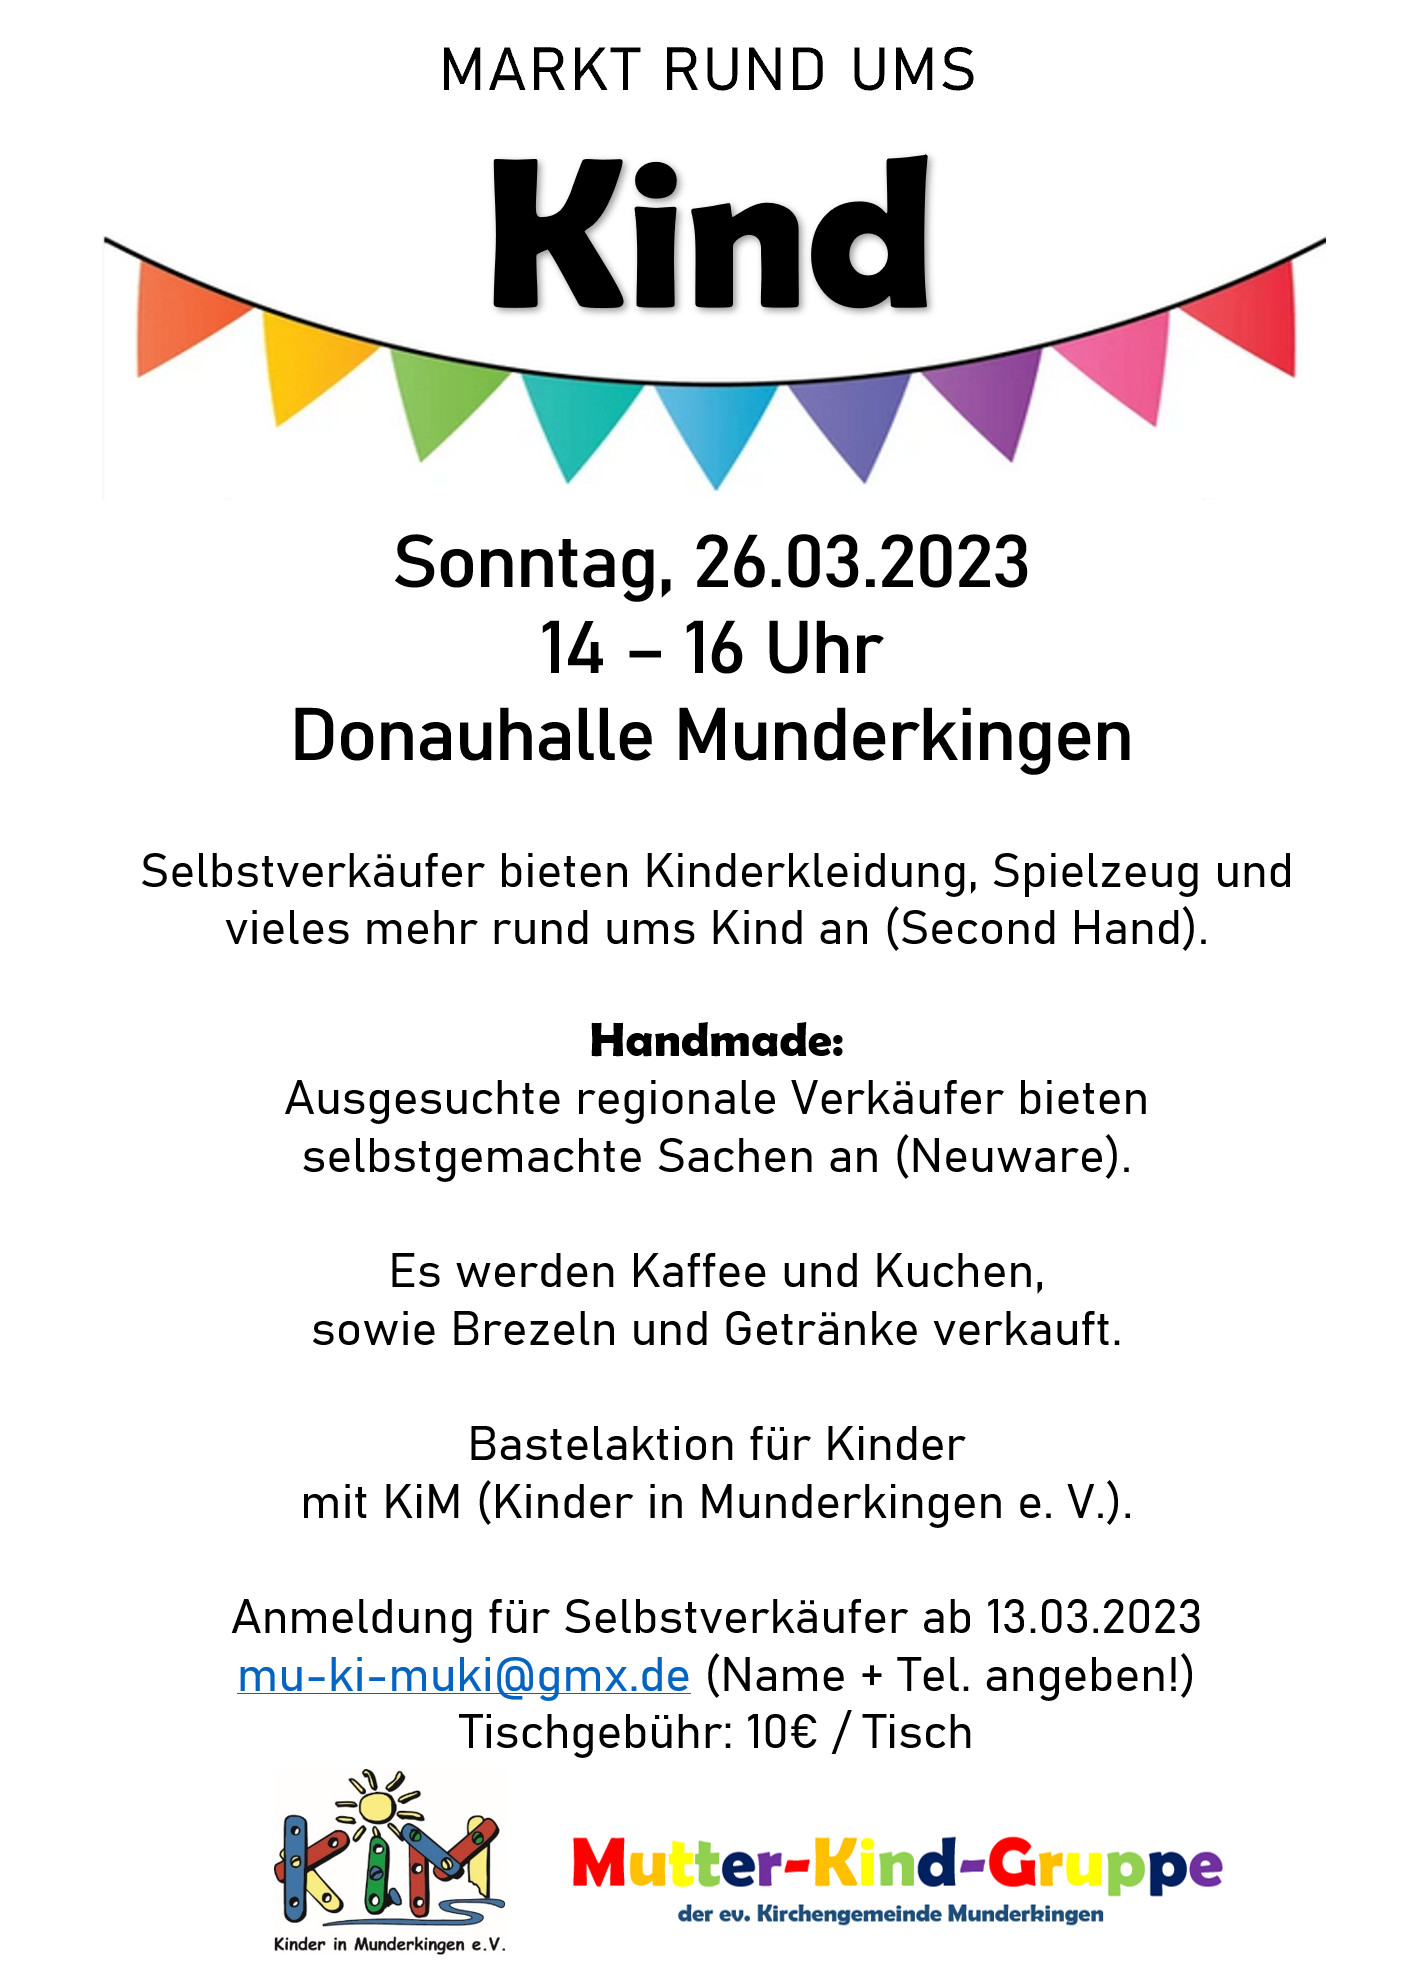 Plakat für den Markt "Rund ums Kind" mit bunter Fahnengirlande und Zeiten: Sonntag, 26.02., 14-16 Uhr in der Donauhalle